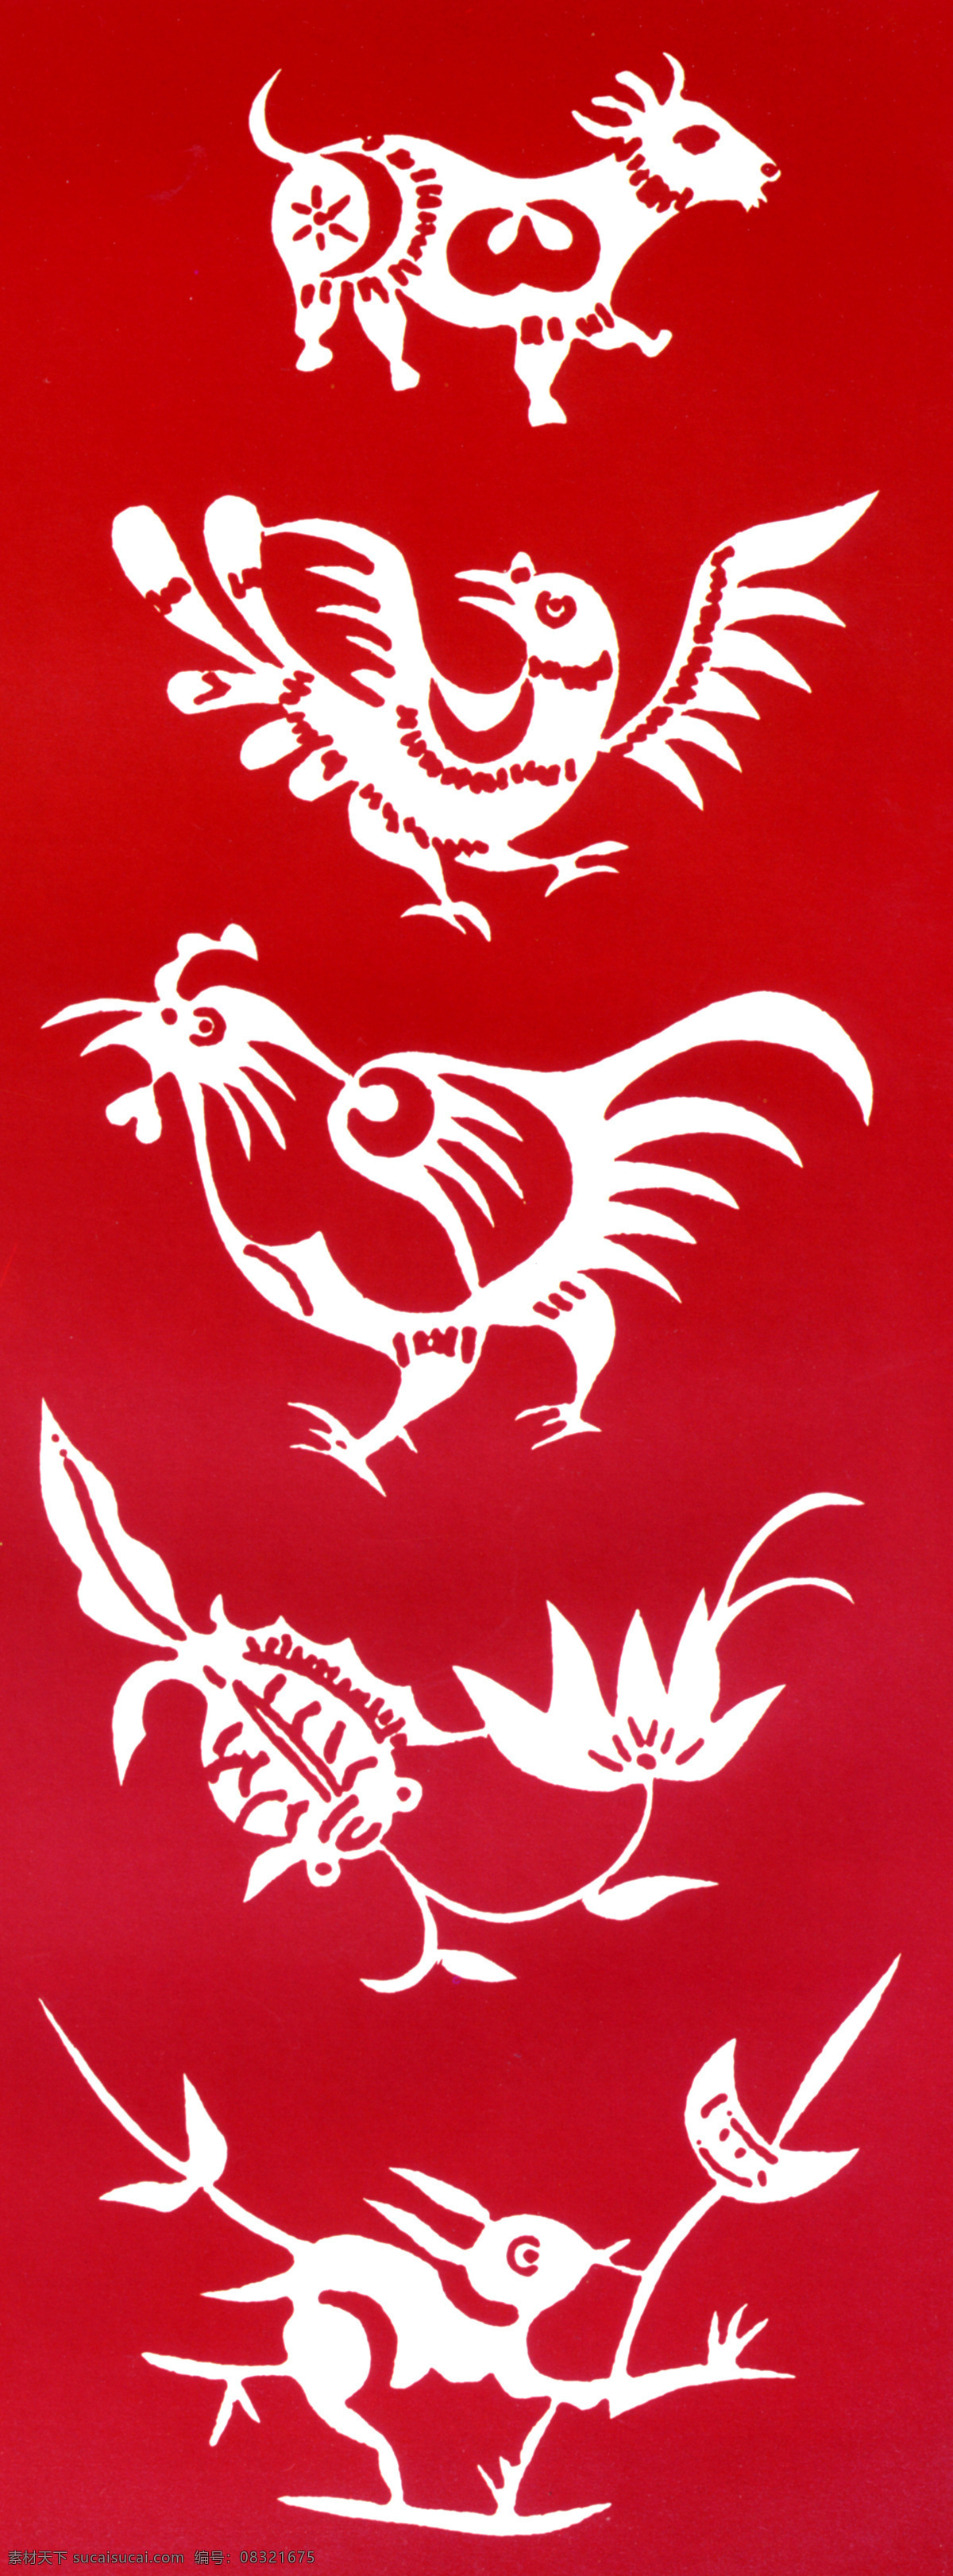 剪纸动物图案 动物 鸡 鸟 牛 羊 鱼 兔子 红色 剪纸 艺术 美术 文化 中国